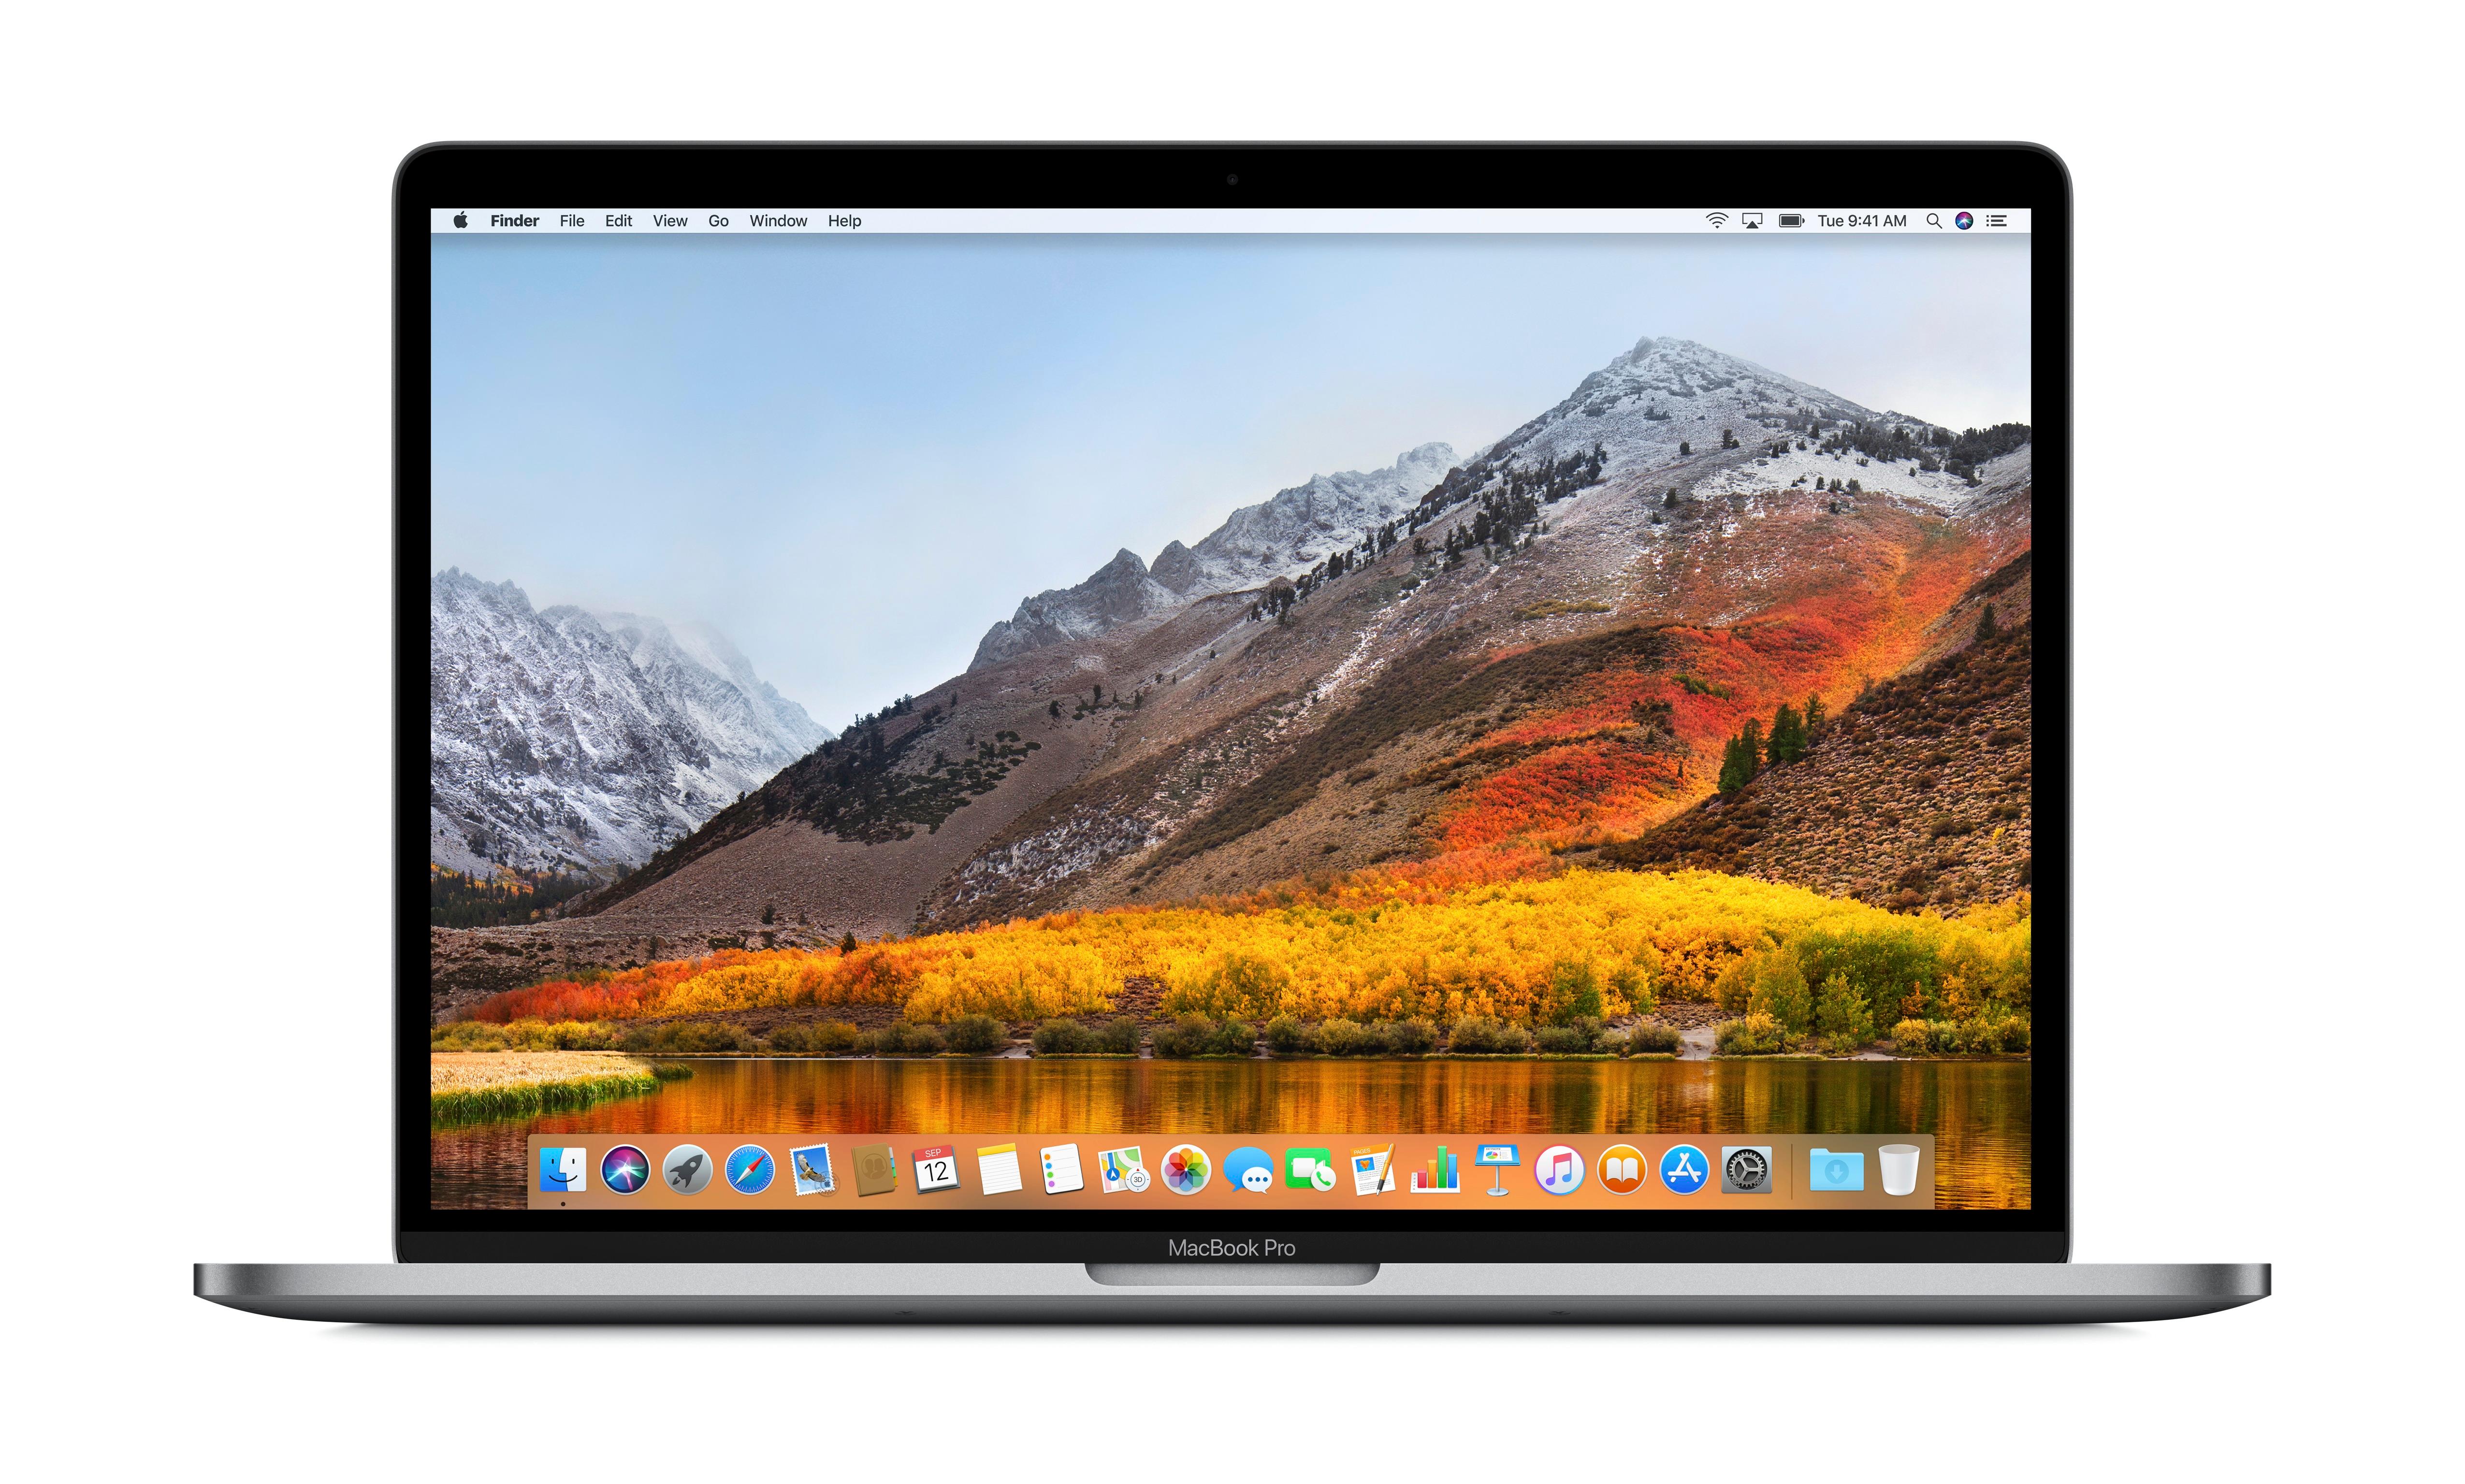 Apple Macbook Pro 15.4